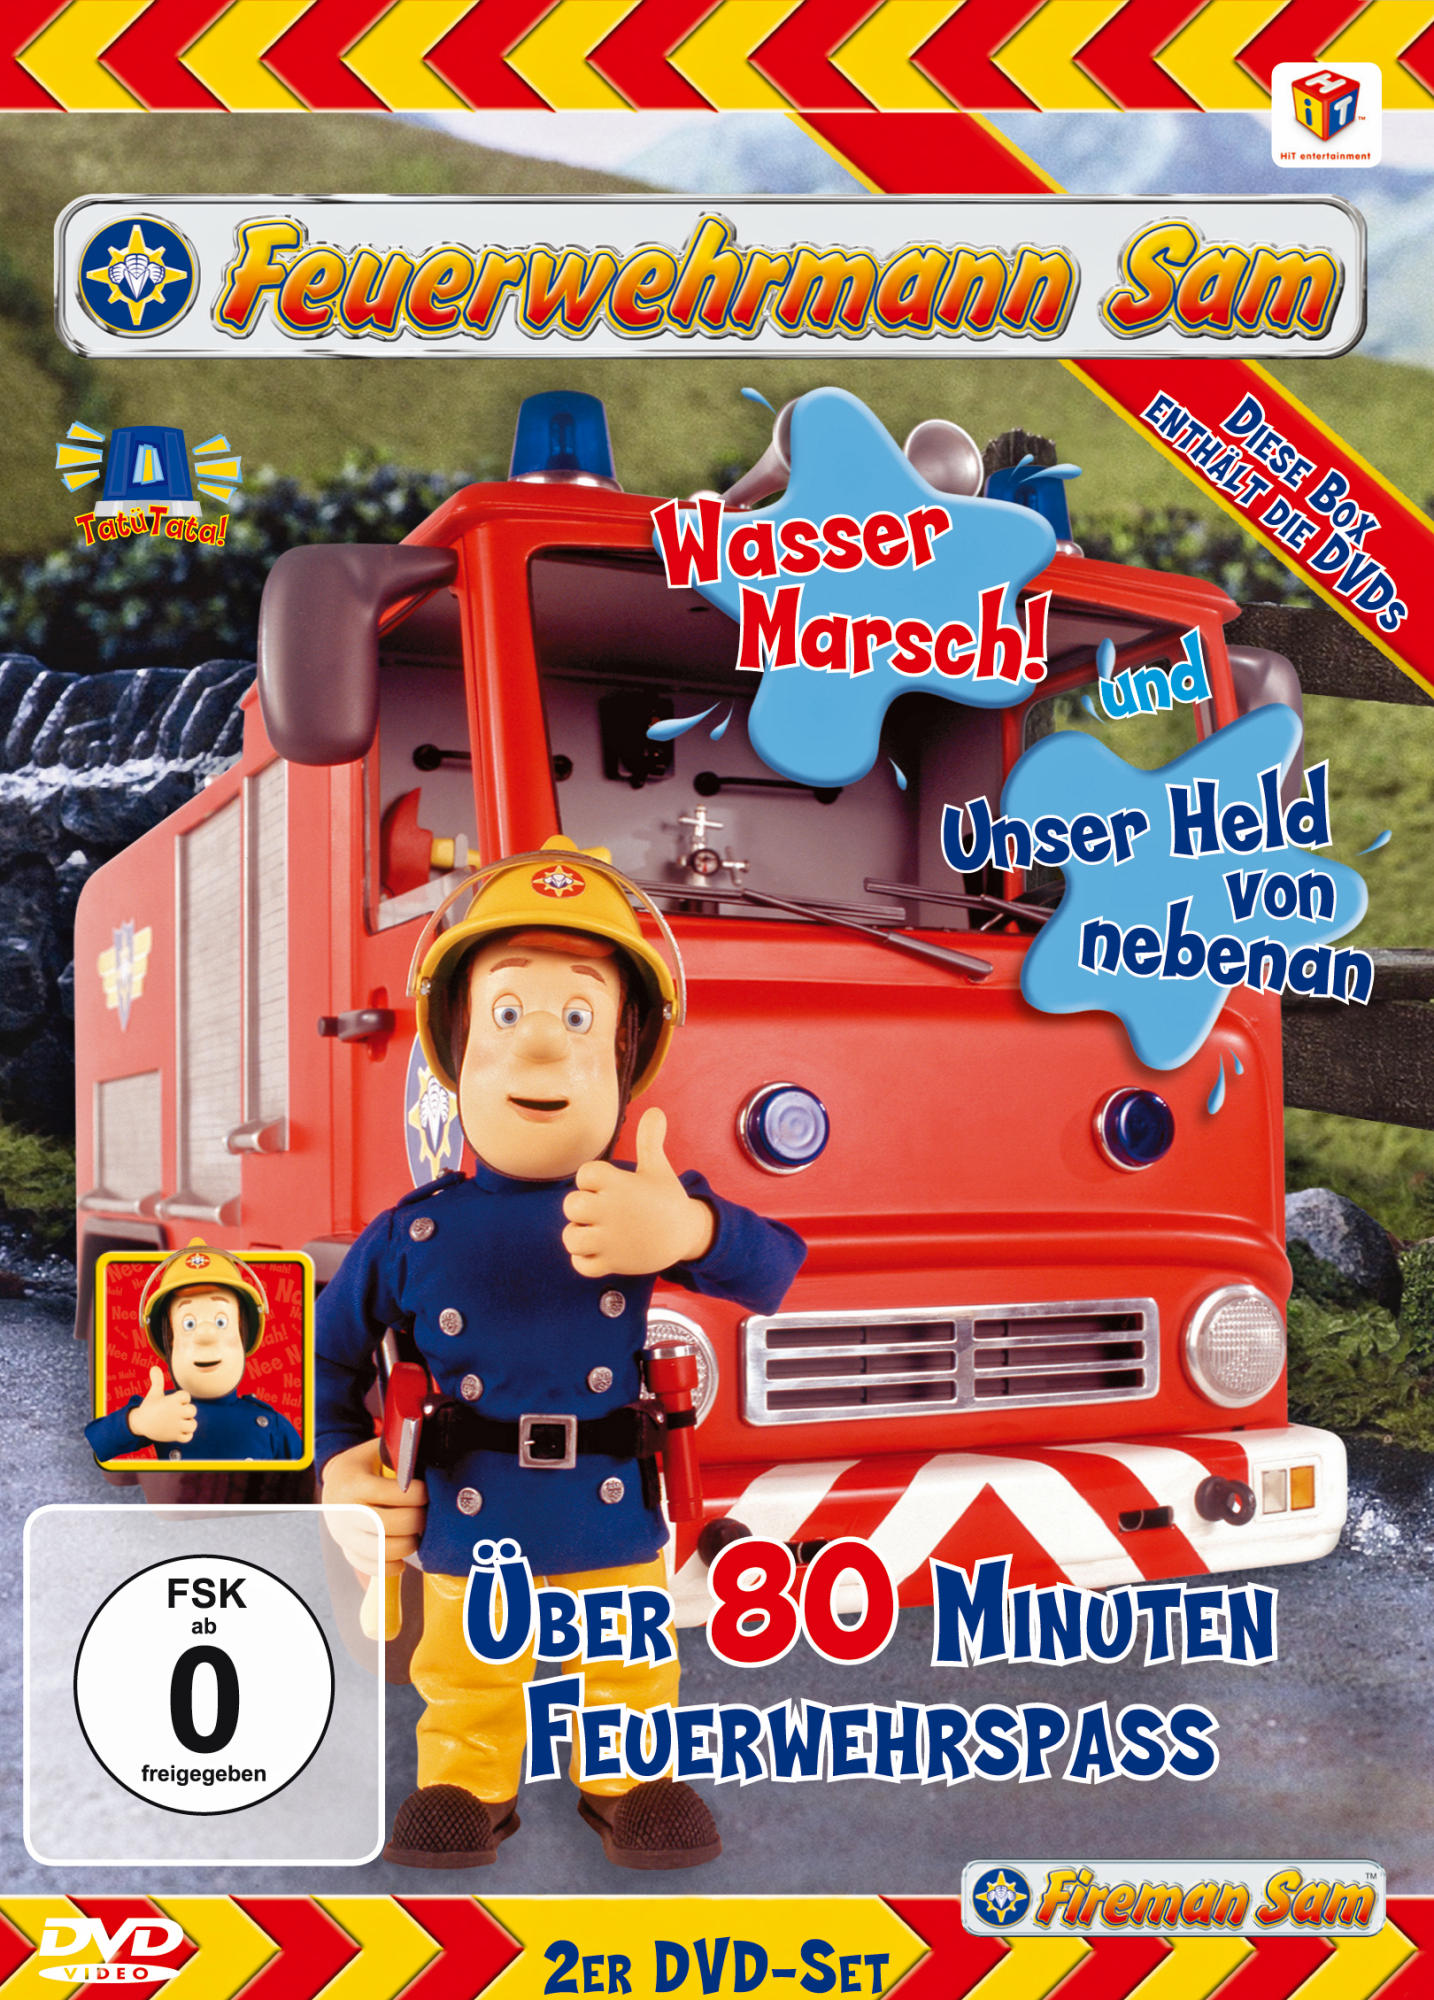 Held Sam Wasser - Marsch! nebenan / Unser DVD von Feuerwehrmann